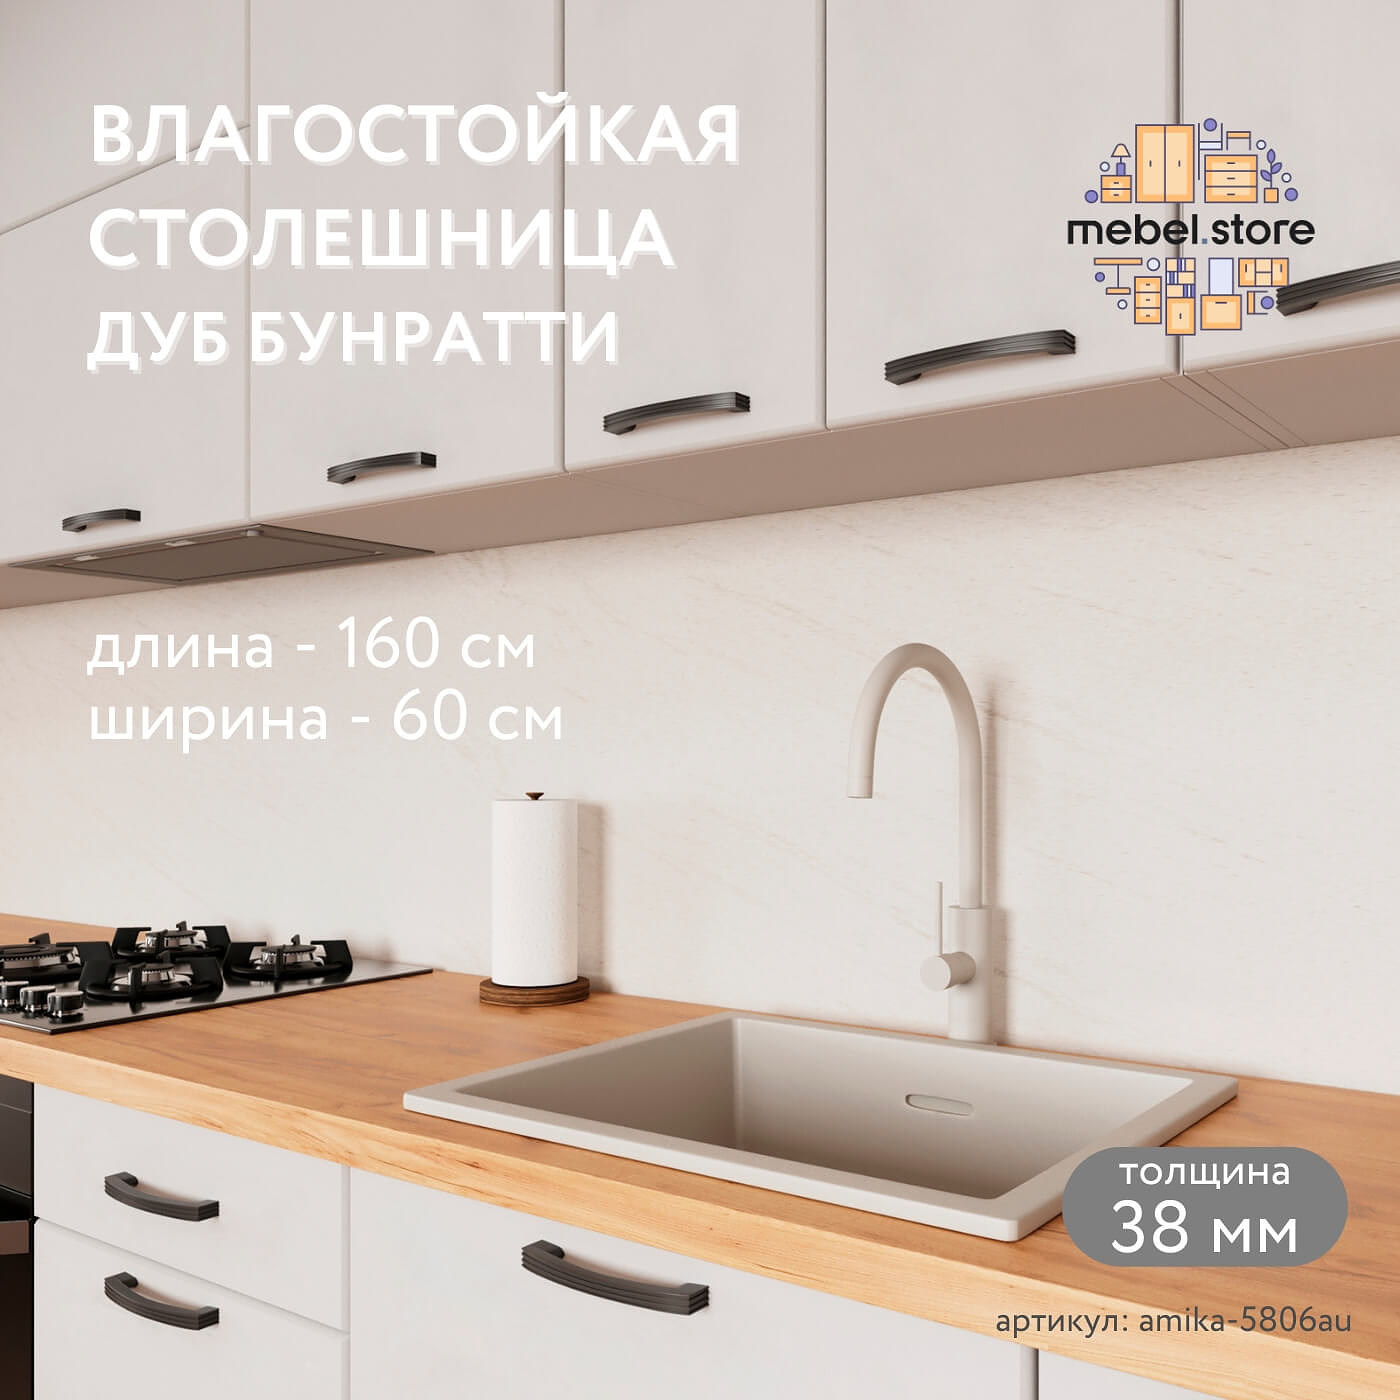 Столешница Амика-5806au минимализм для кухни - фото 1 large